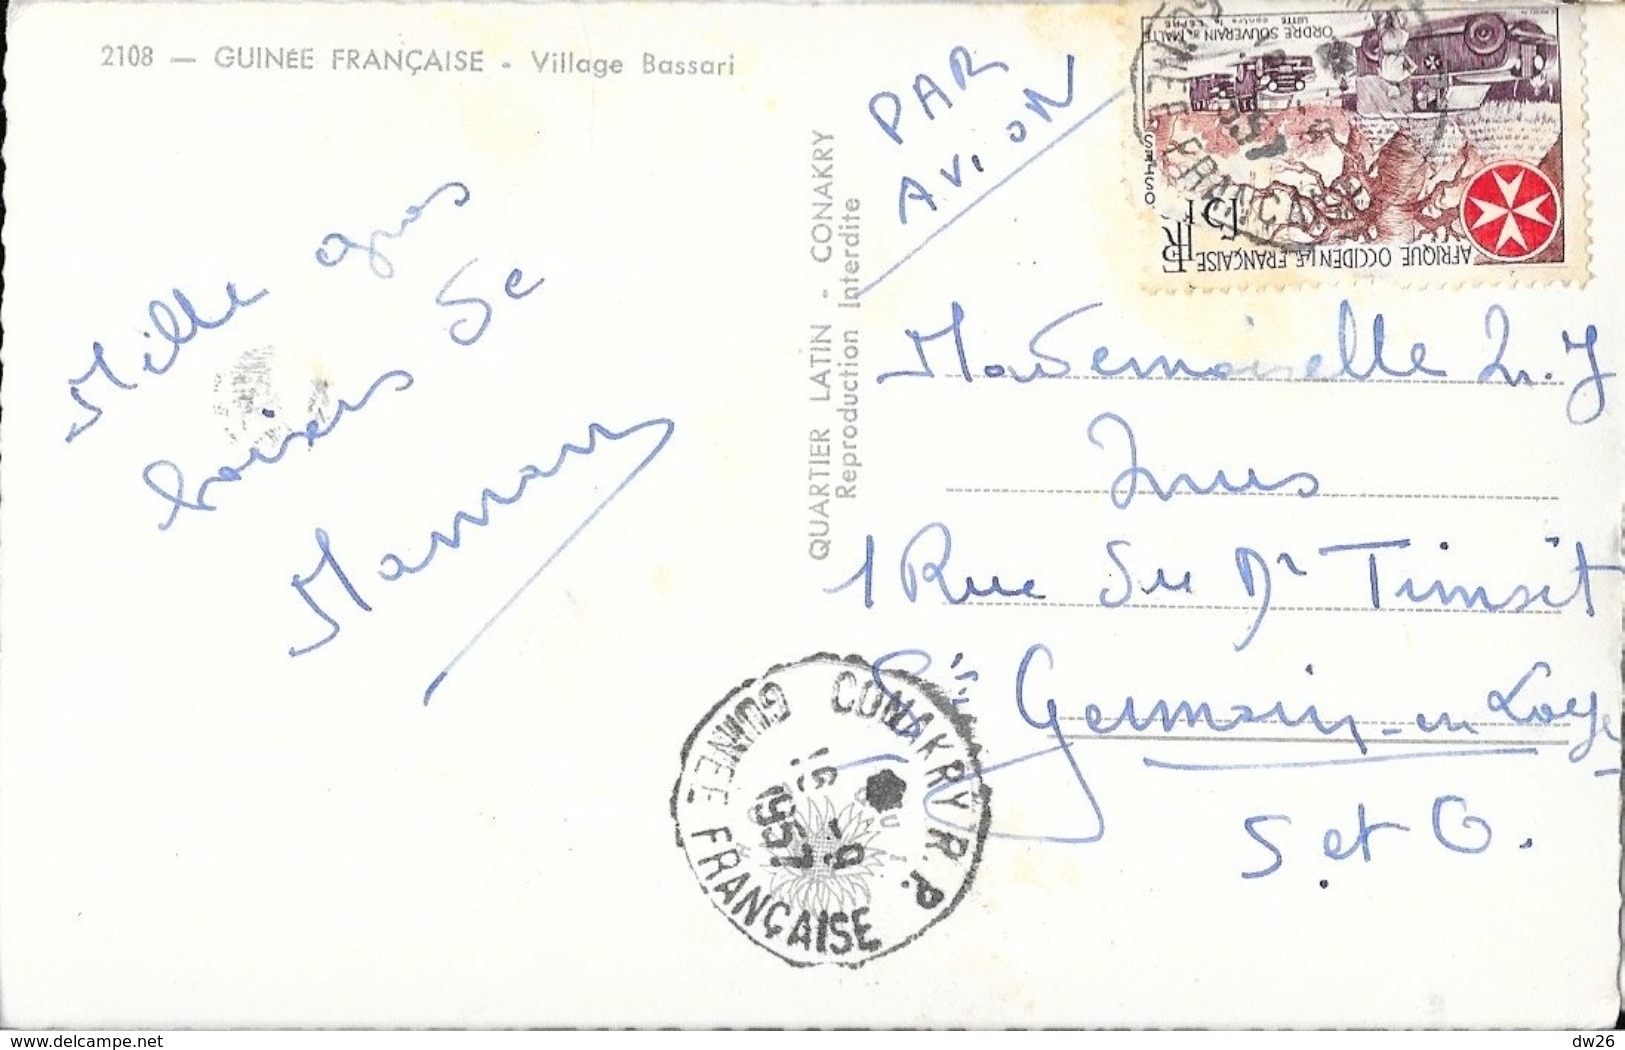 Guinée Française (A.O.F.) - Village Bassari - Edition Quartier Latin, Konakry - French Guinea